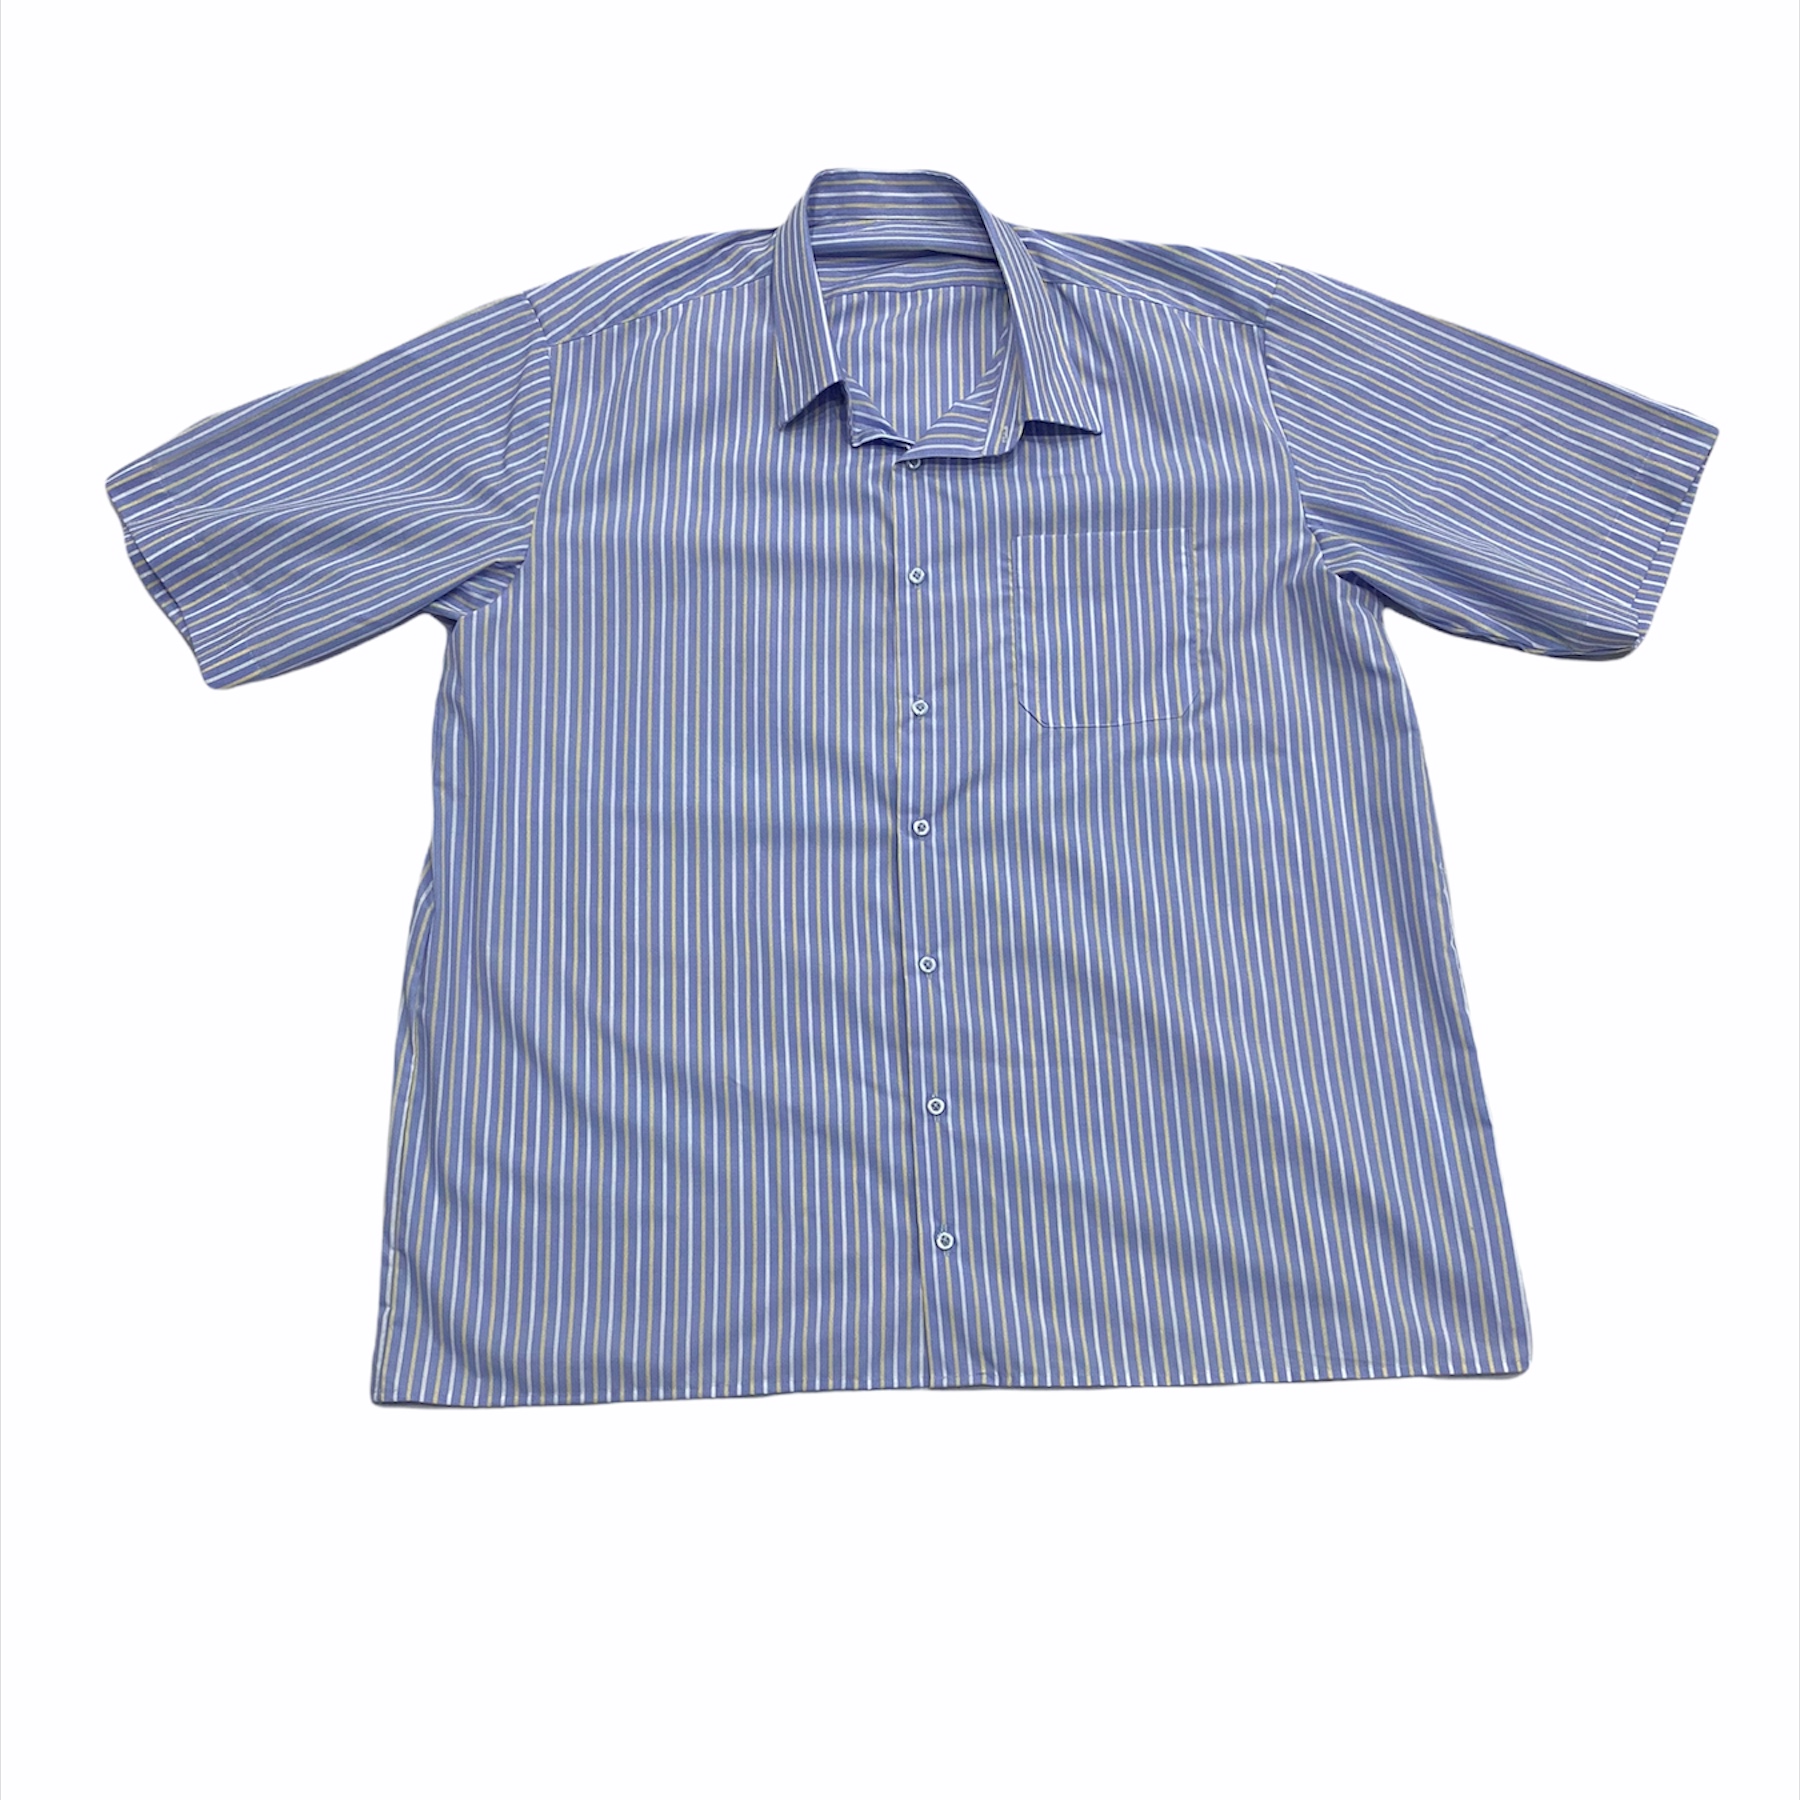 پیراهن آستین کوتاه مردانه مدل آسمان رنگ آبی